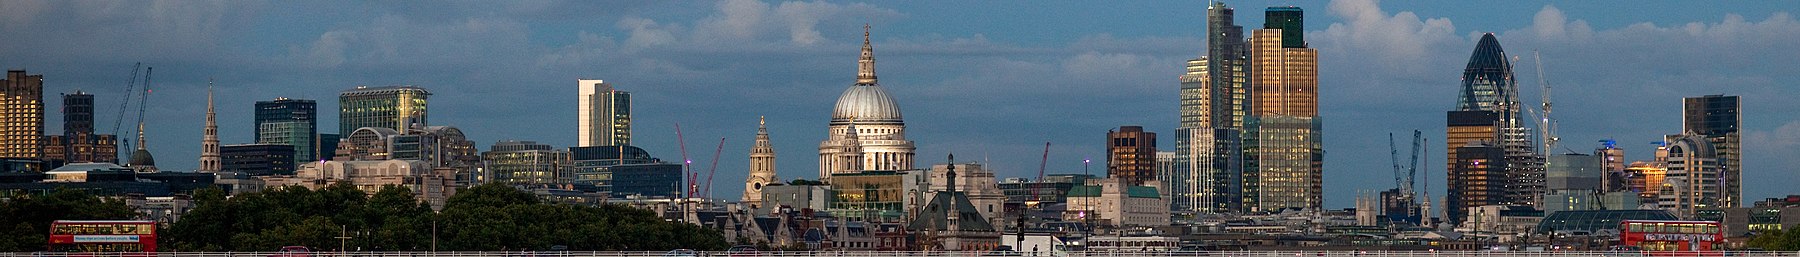 City of London banner.jpg